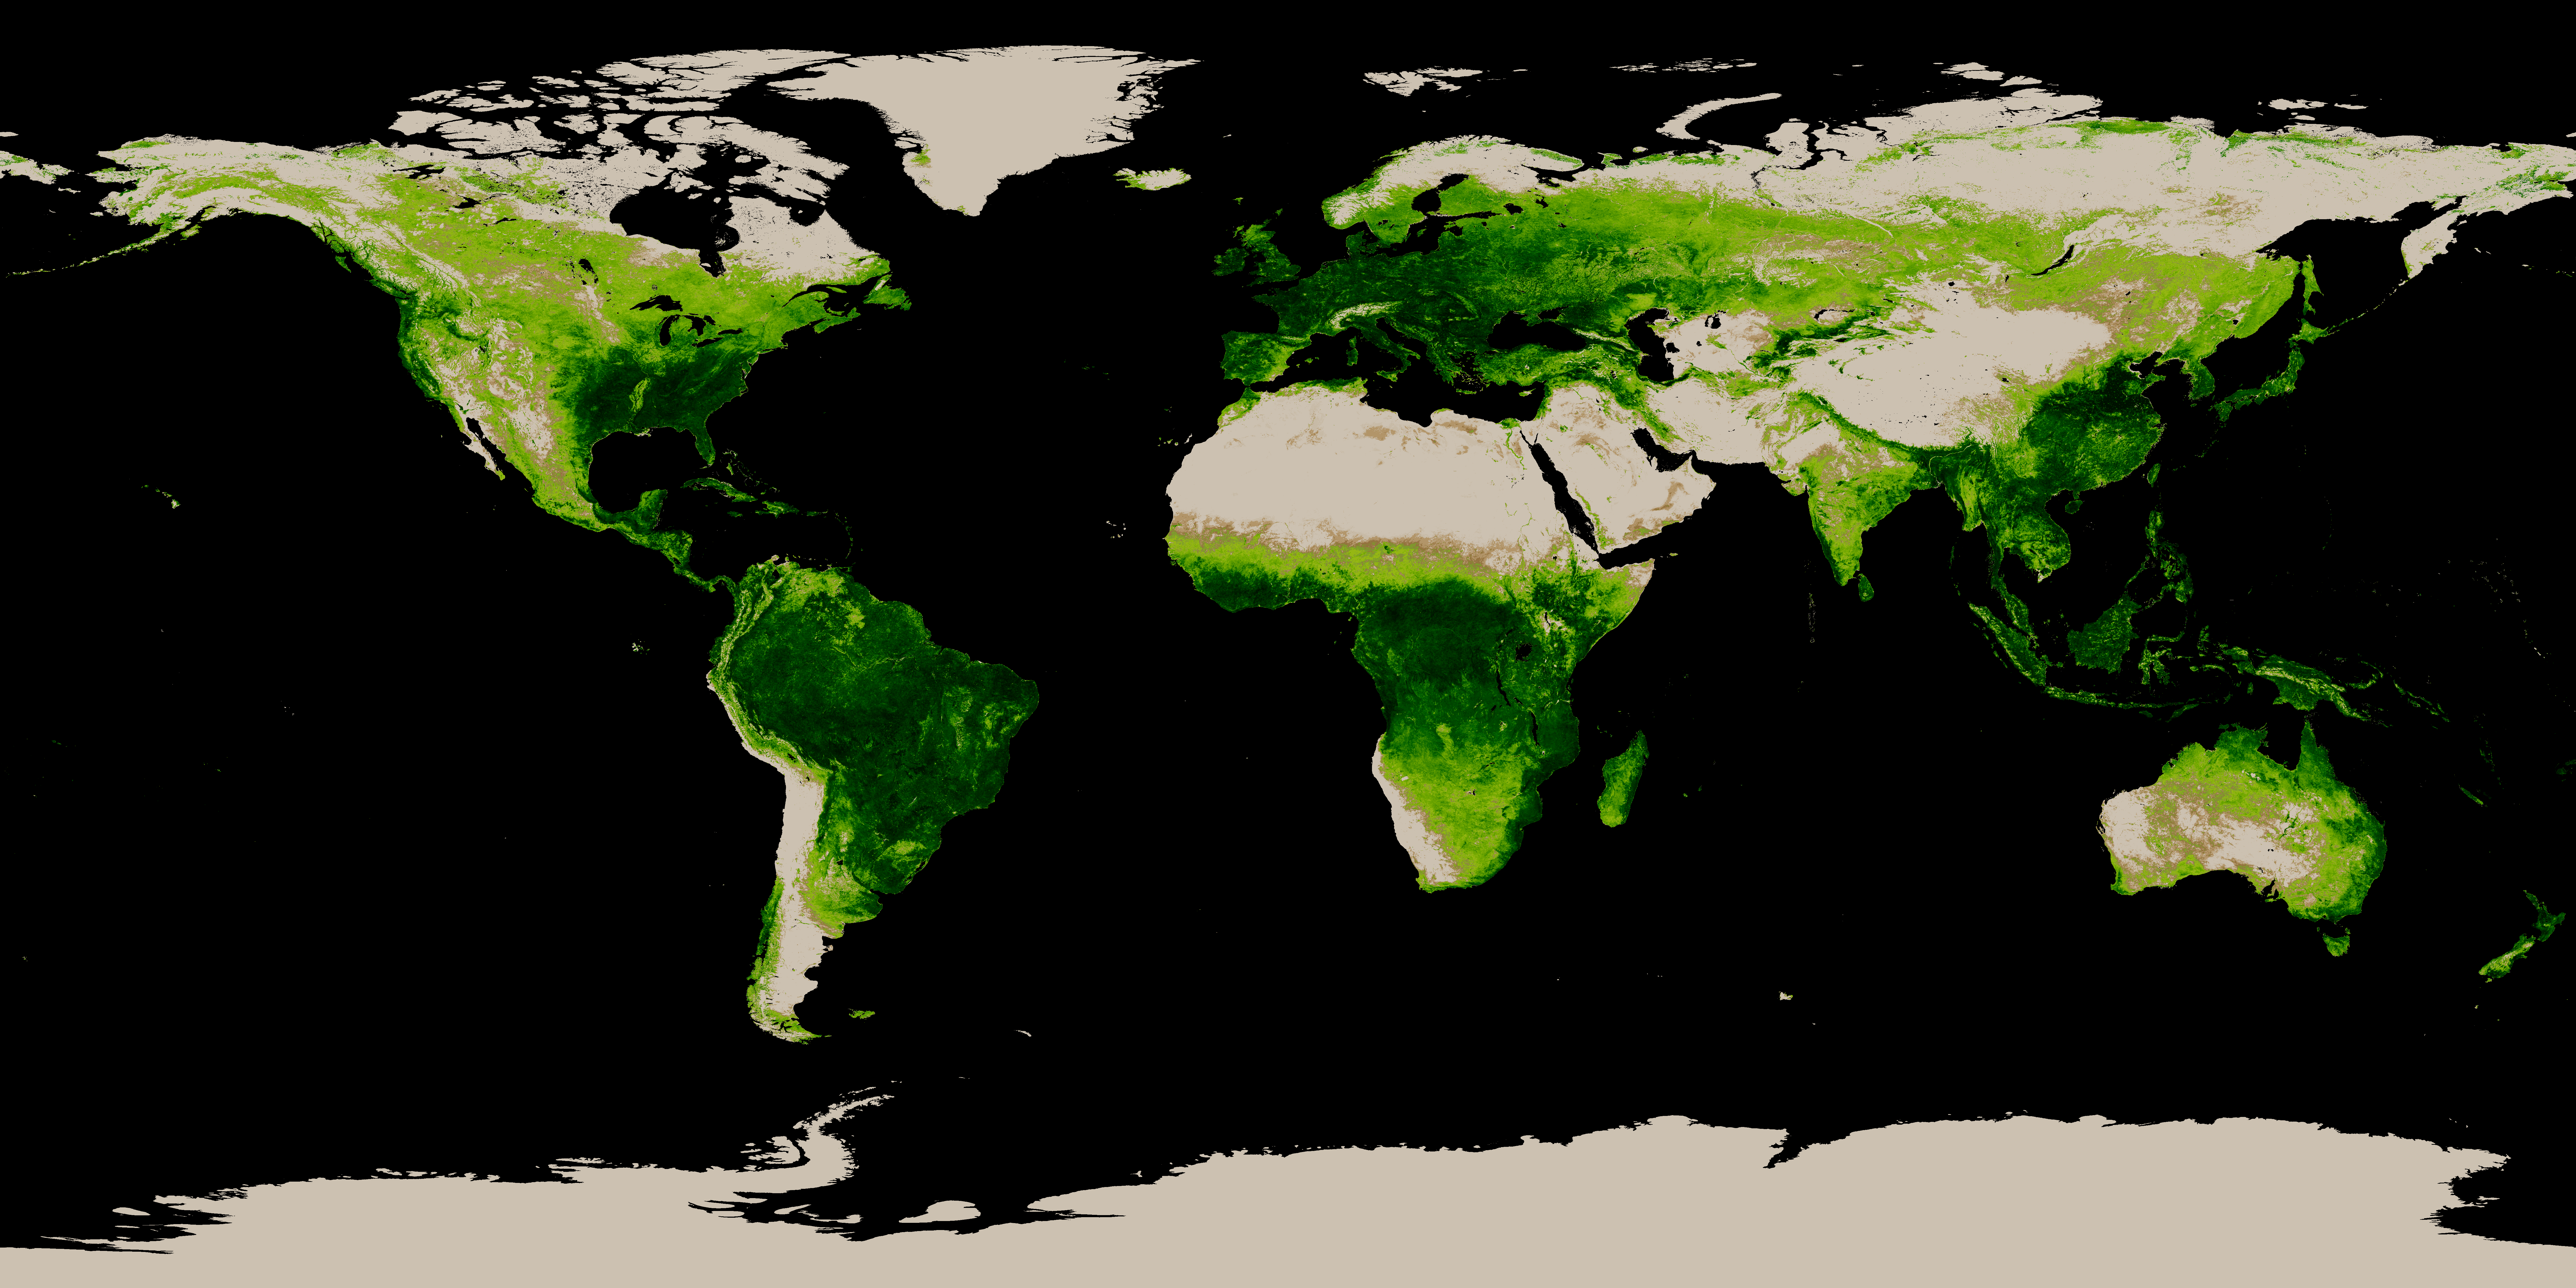 Green Vegetation Fraction (GVF) system